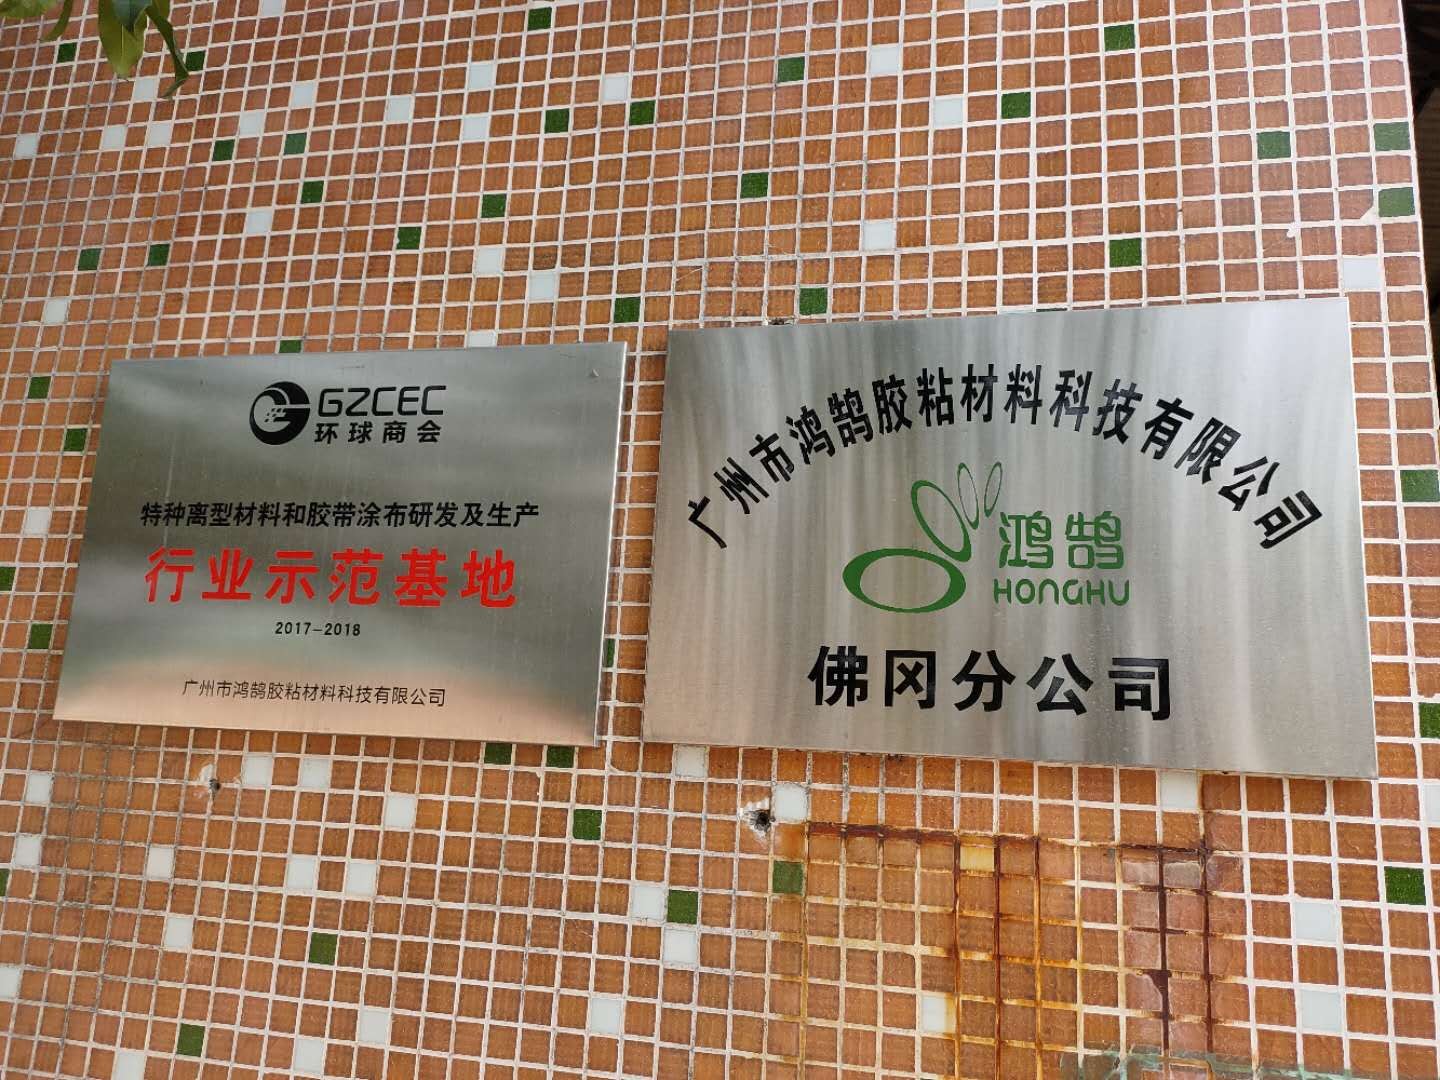 广州市鸿鹄胶粘材料科技有限公司